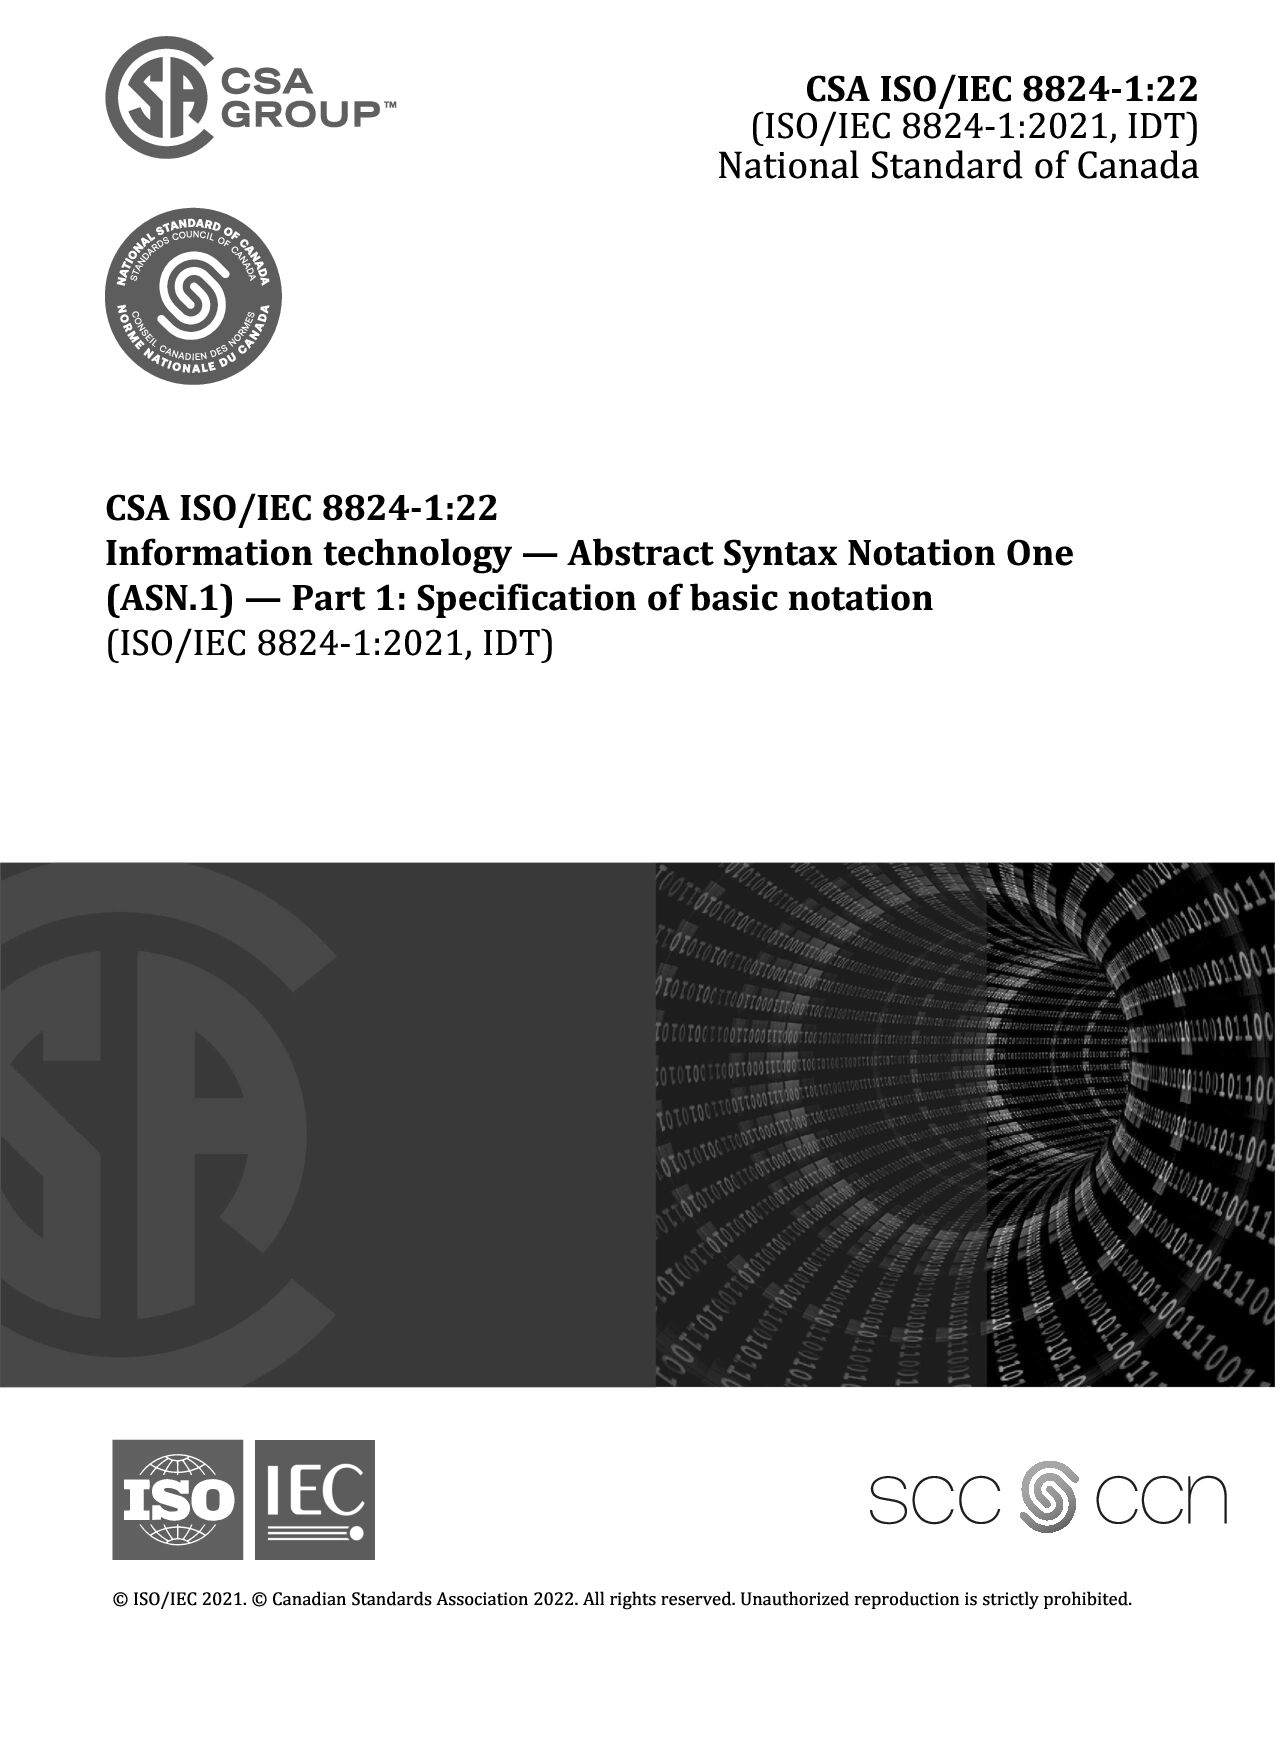 CSA ISO/IEC 8824-1:2022封面图